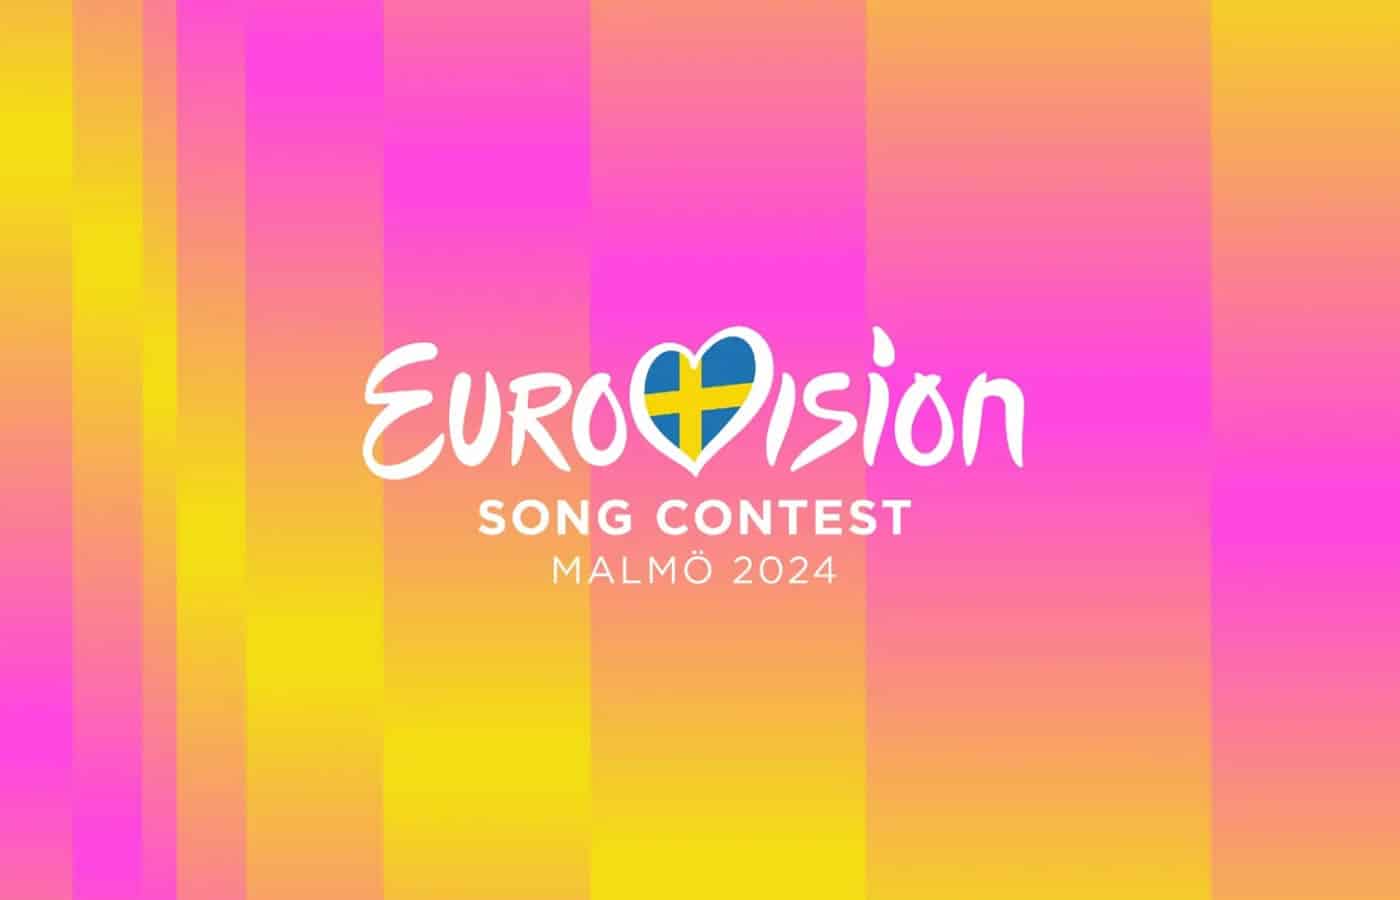 Ξεκινάει σήμερα ο 68ος Διαγωνισμός Τραγουδιού της Eurovision με τον Α' ημιτελικό! Η Κύπρος ανοίγει το σόου, ενώ η Ελλάδα διαγωνίζεται στον Β' ημιτελικό στις 9 Μαΐου.